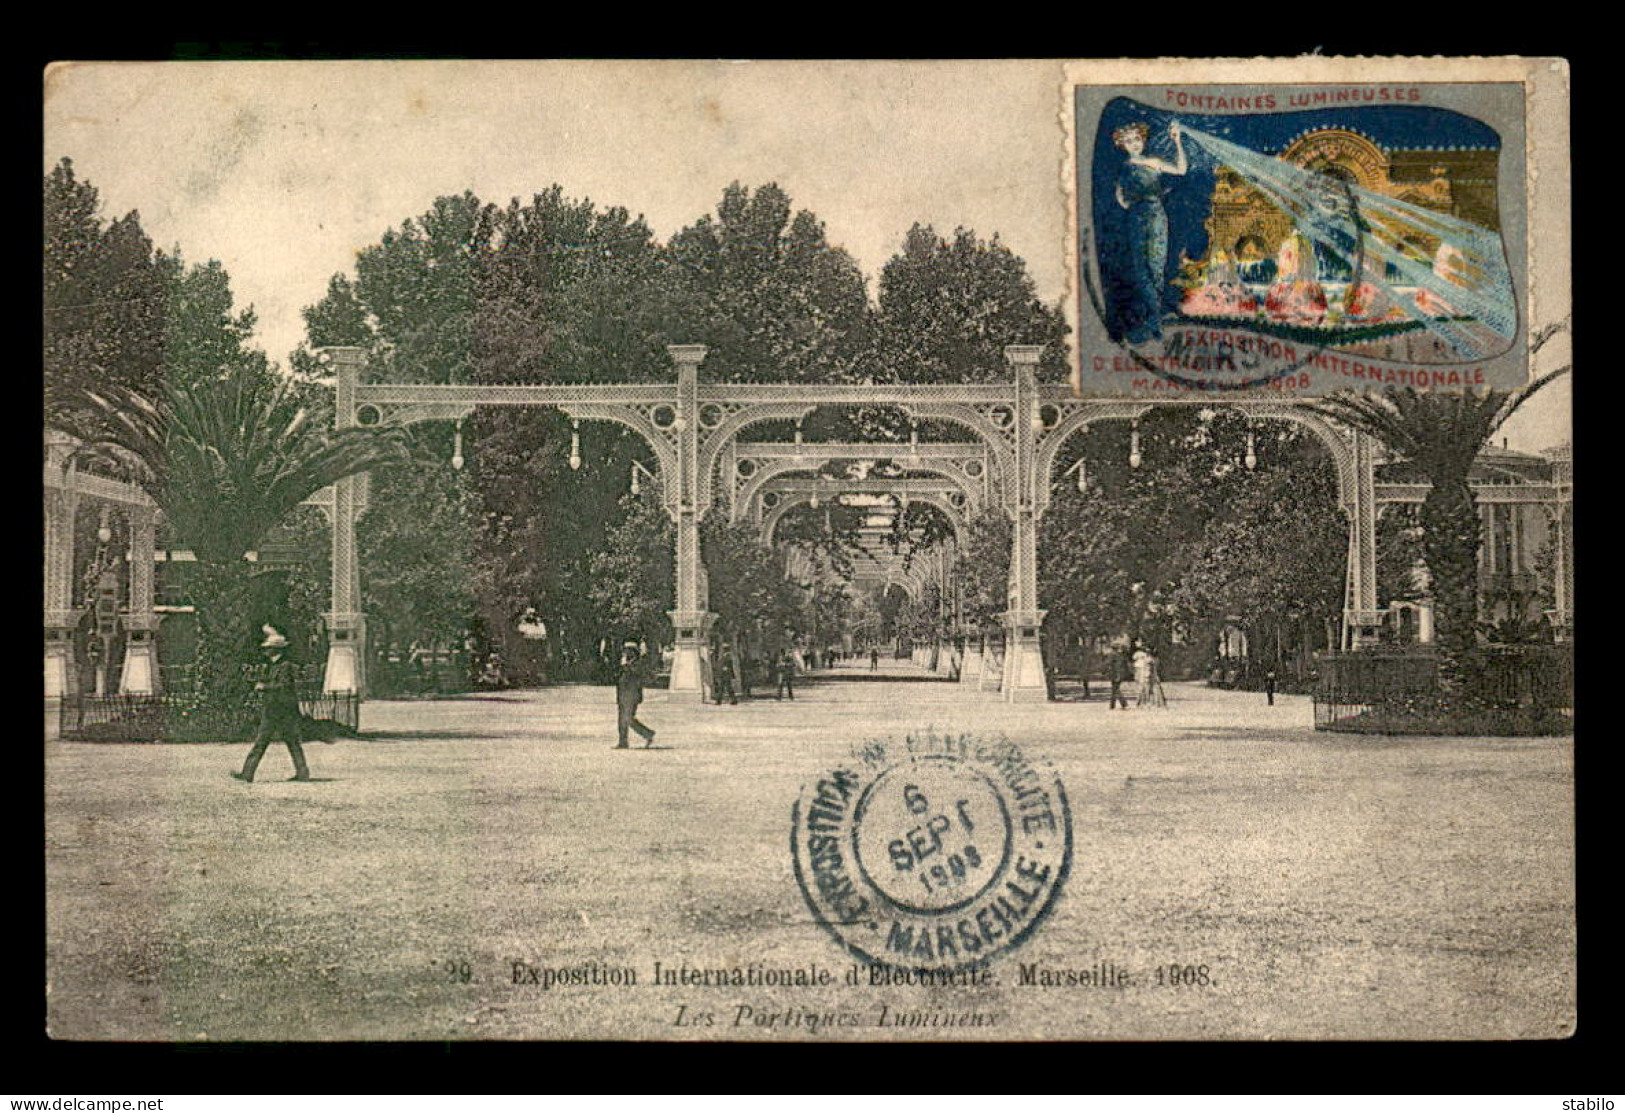 13 - MARSEILLE - EXPOSITION INTERNATIONALE D'ELECTRICITE 1908 - LES PORTIQUES LUMINEUX - VIGNETTE - Exposition D'Electricité Et Autres